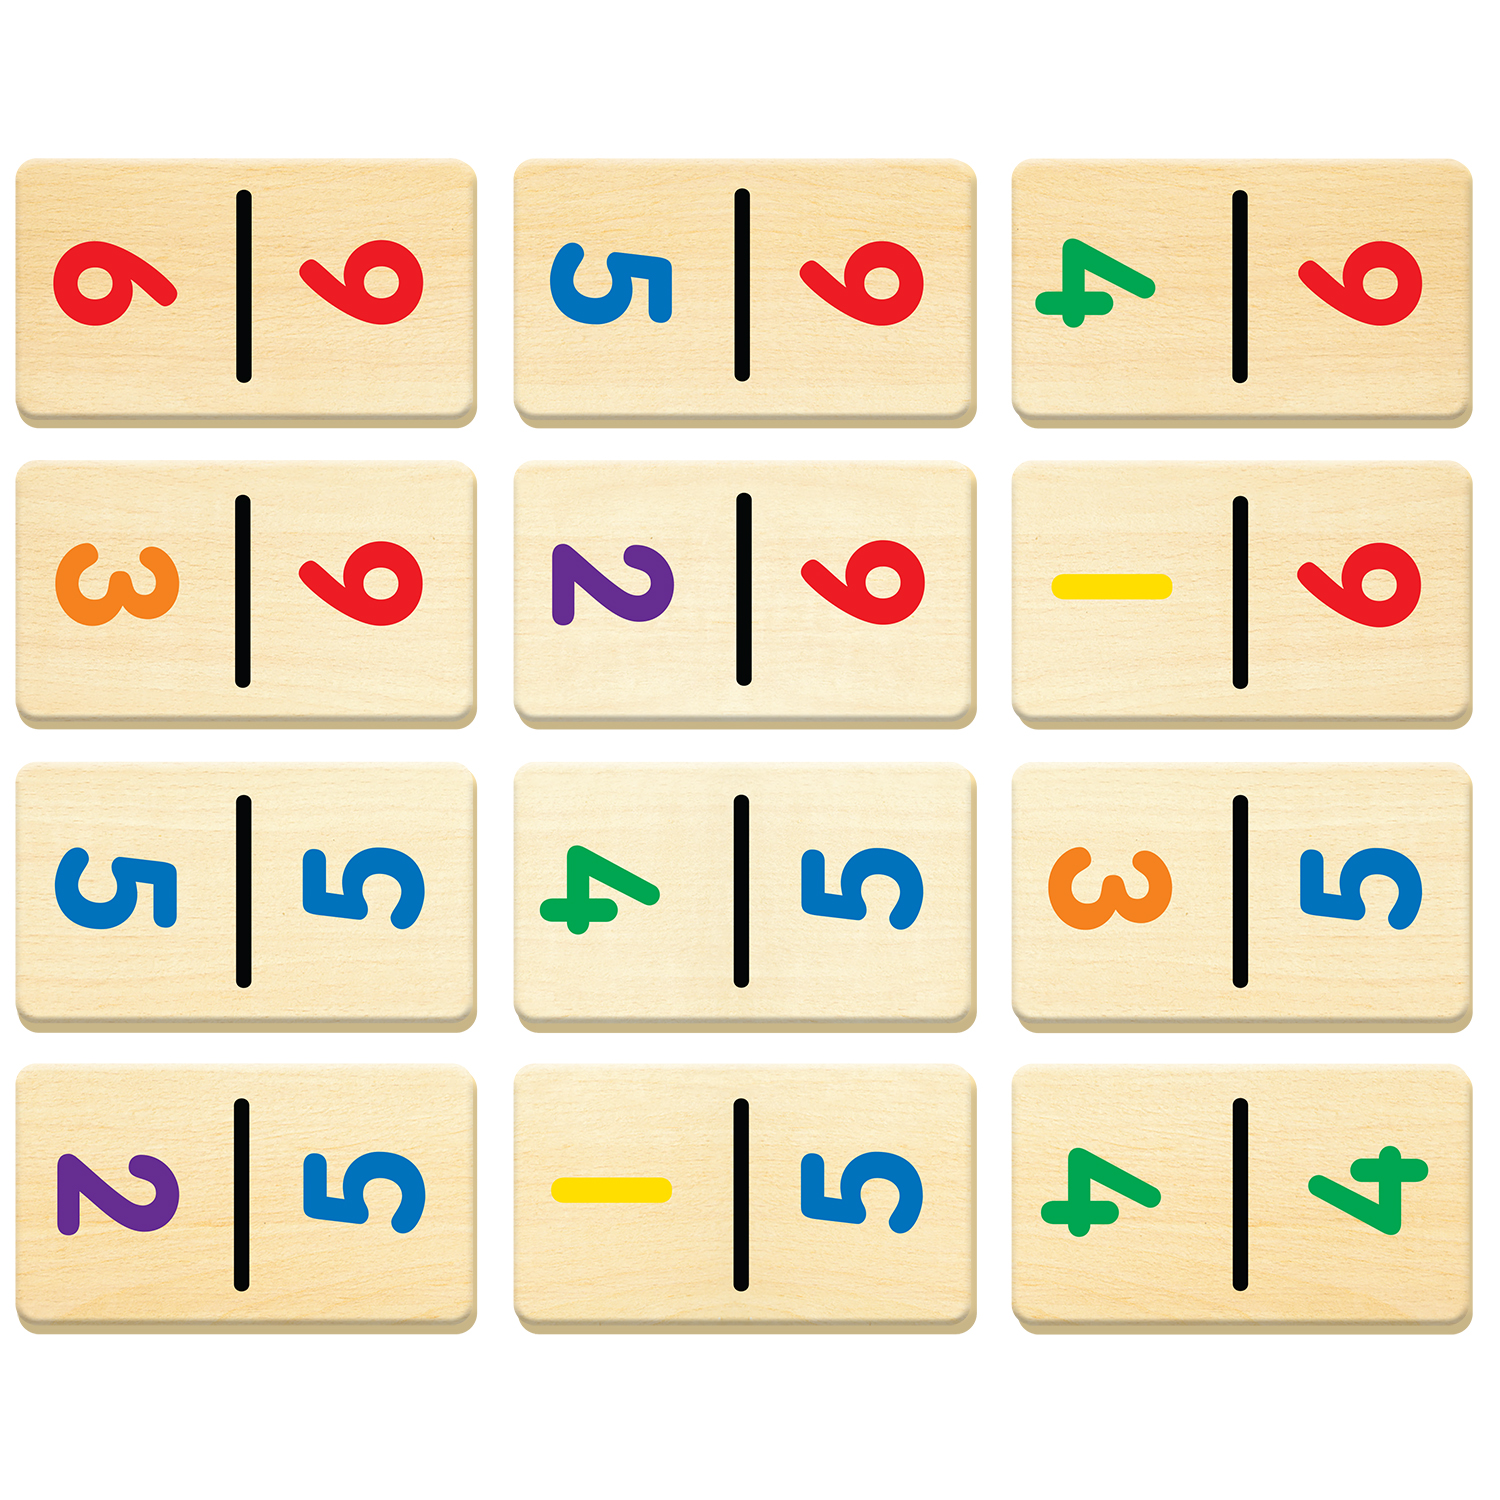 dominoes number